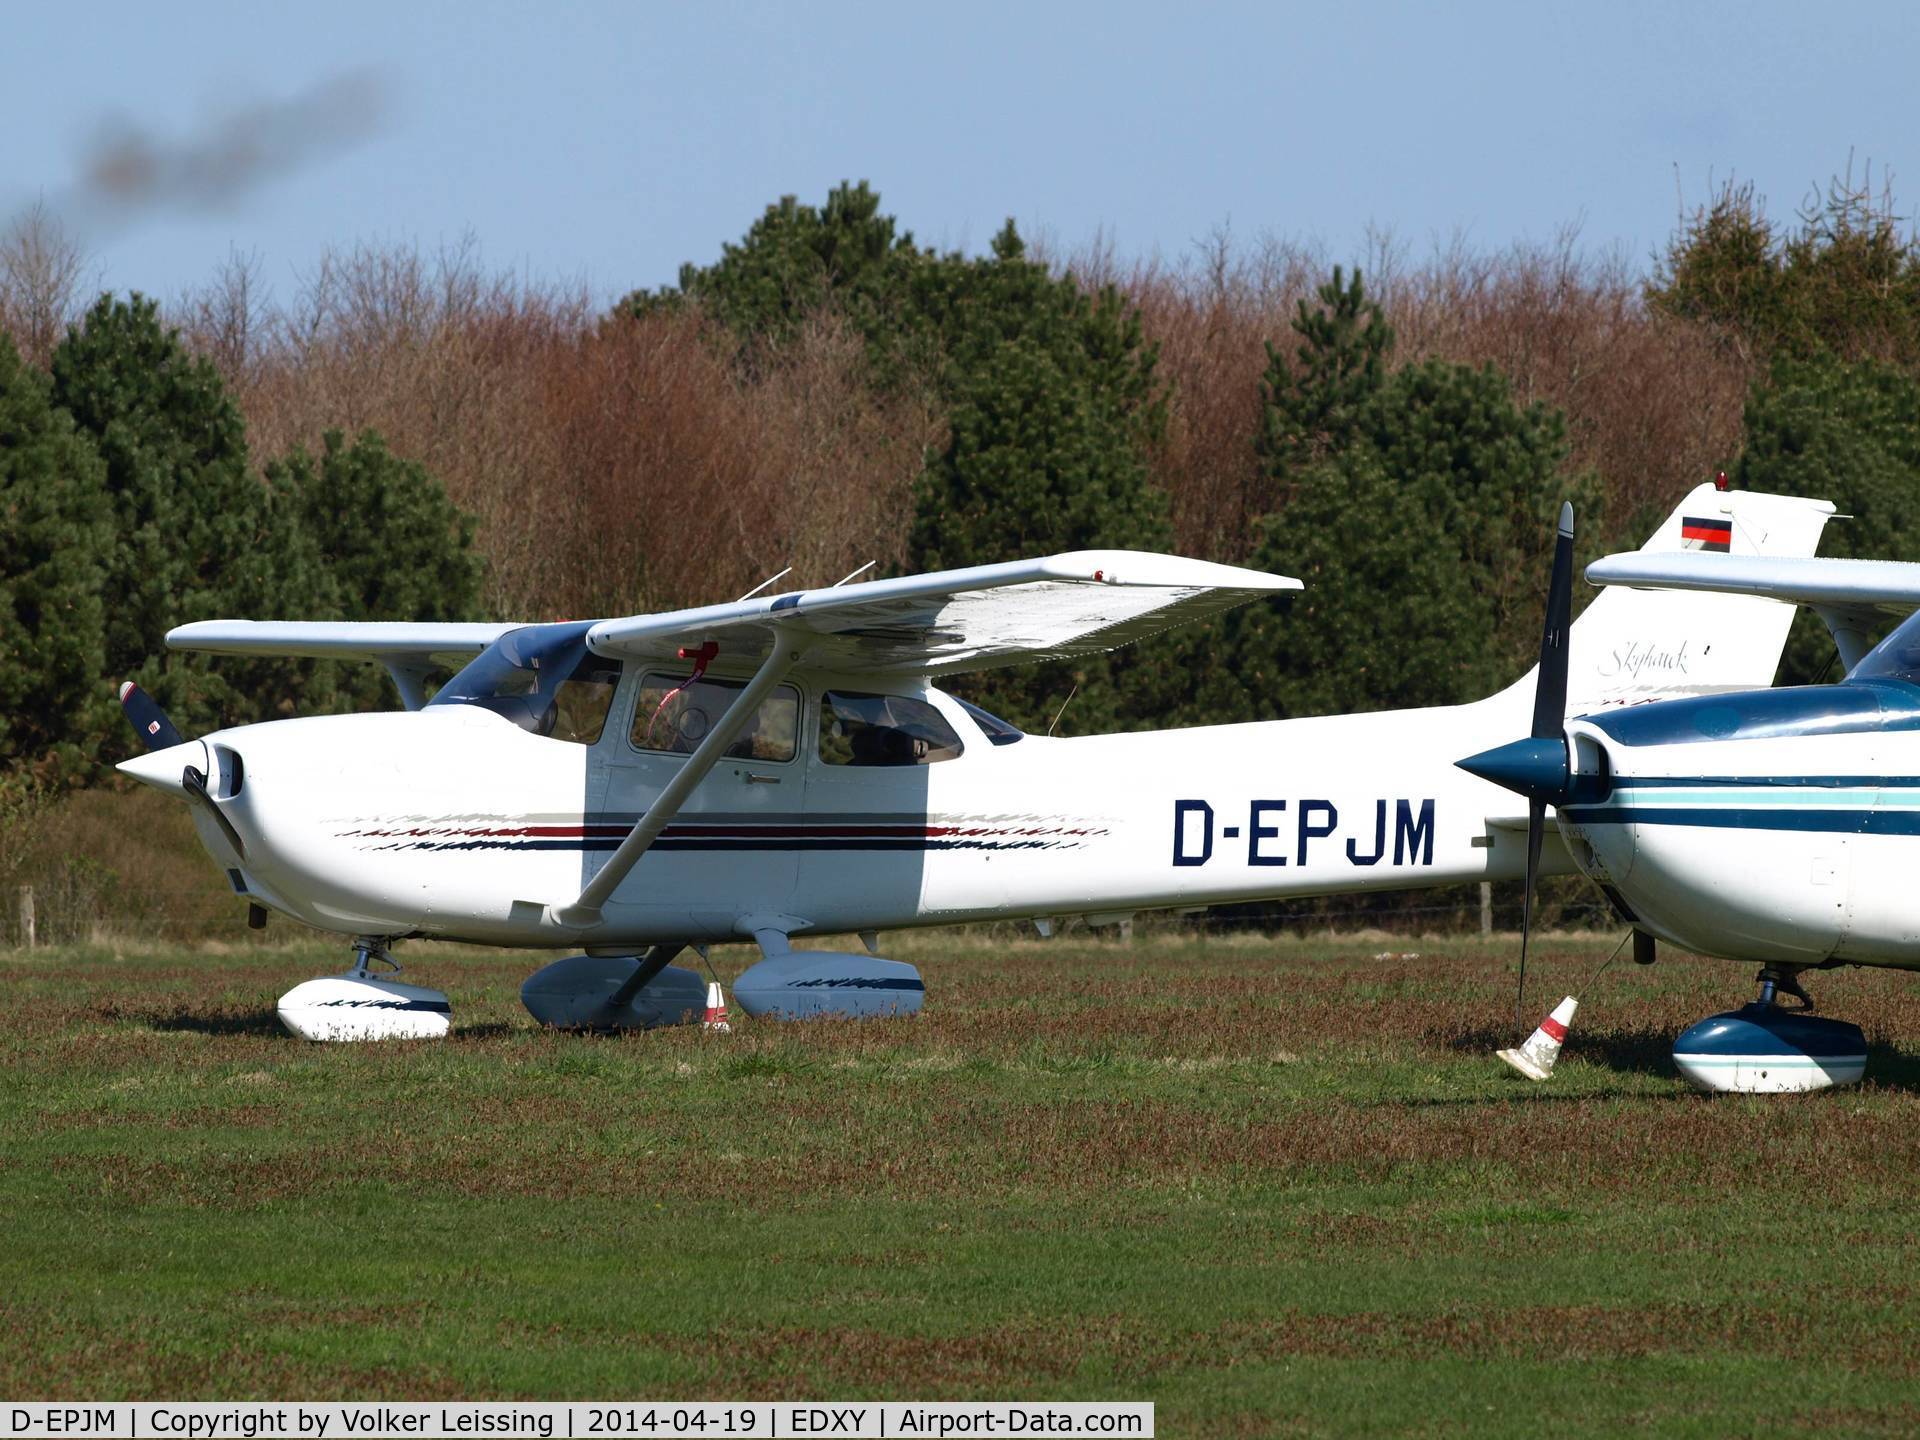 D-EPJM, 1998 Cessna 172R C/N 17280336, parking